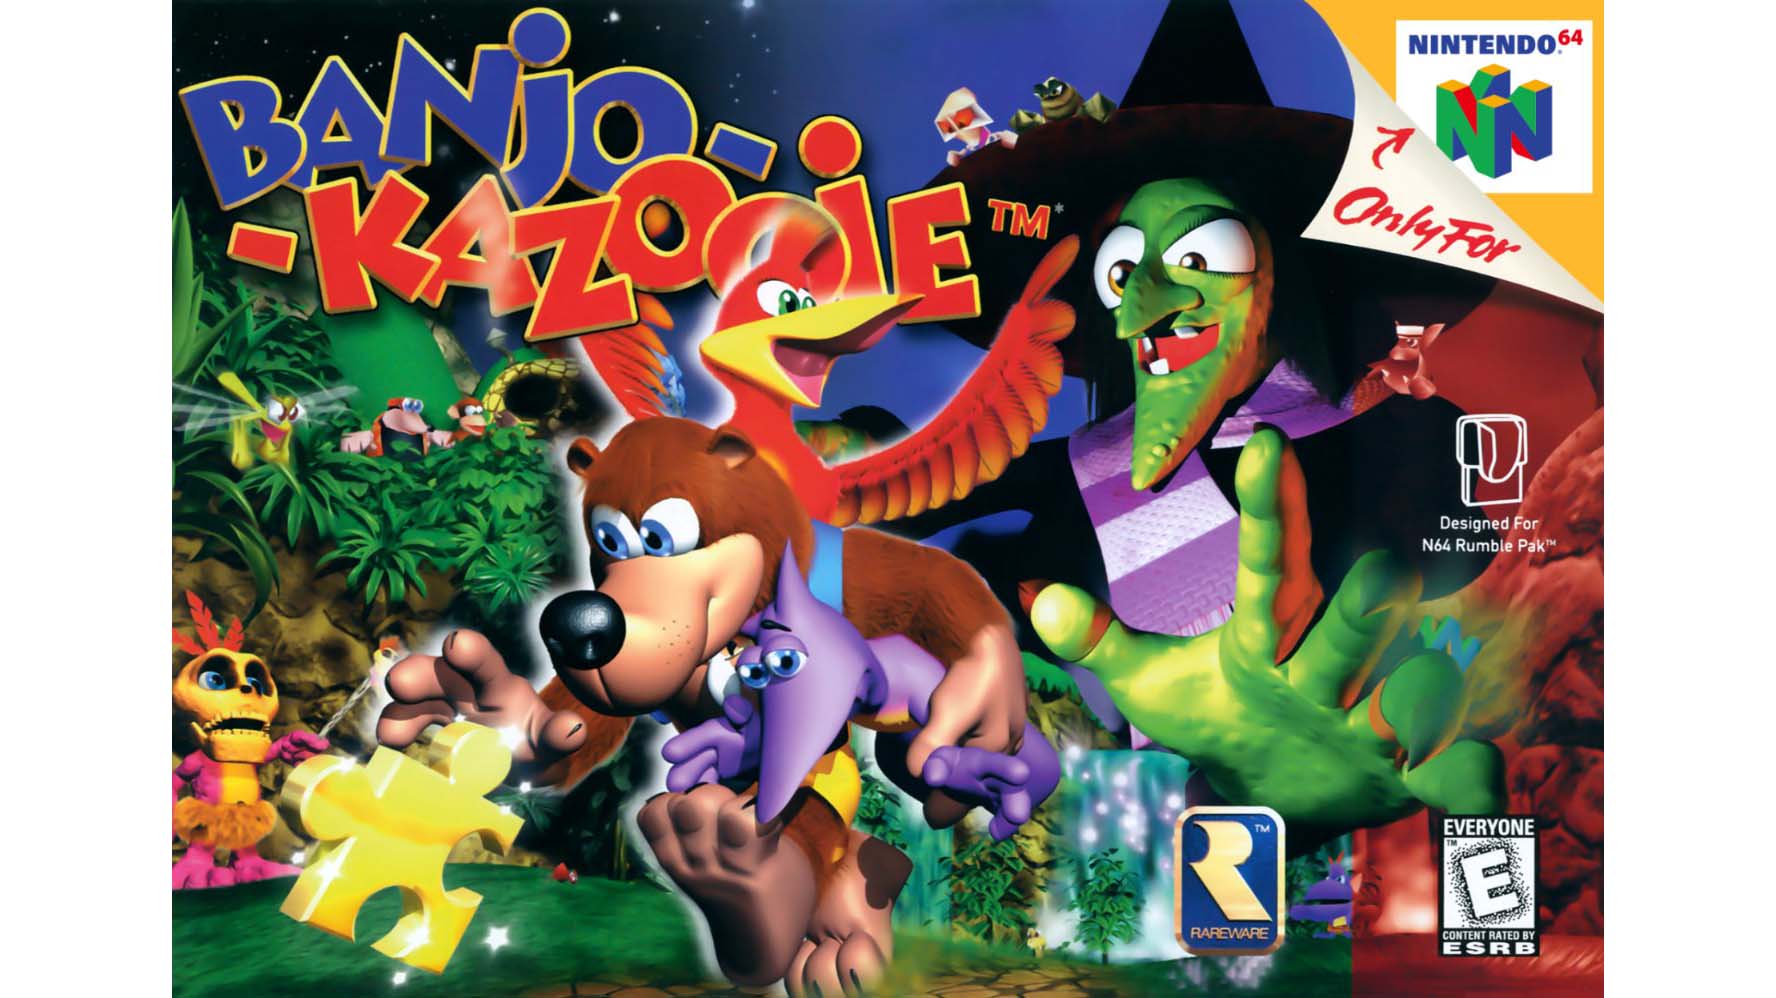 N64 Game Banjo-Kazooie Coming Nintendo Switch Online + Expansion